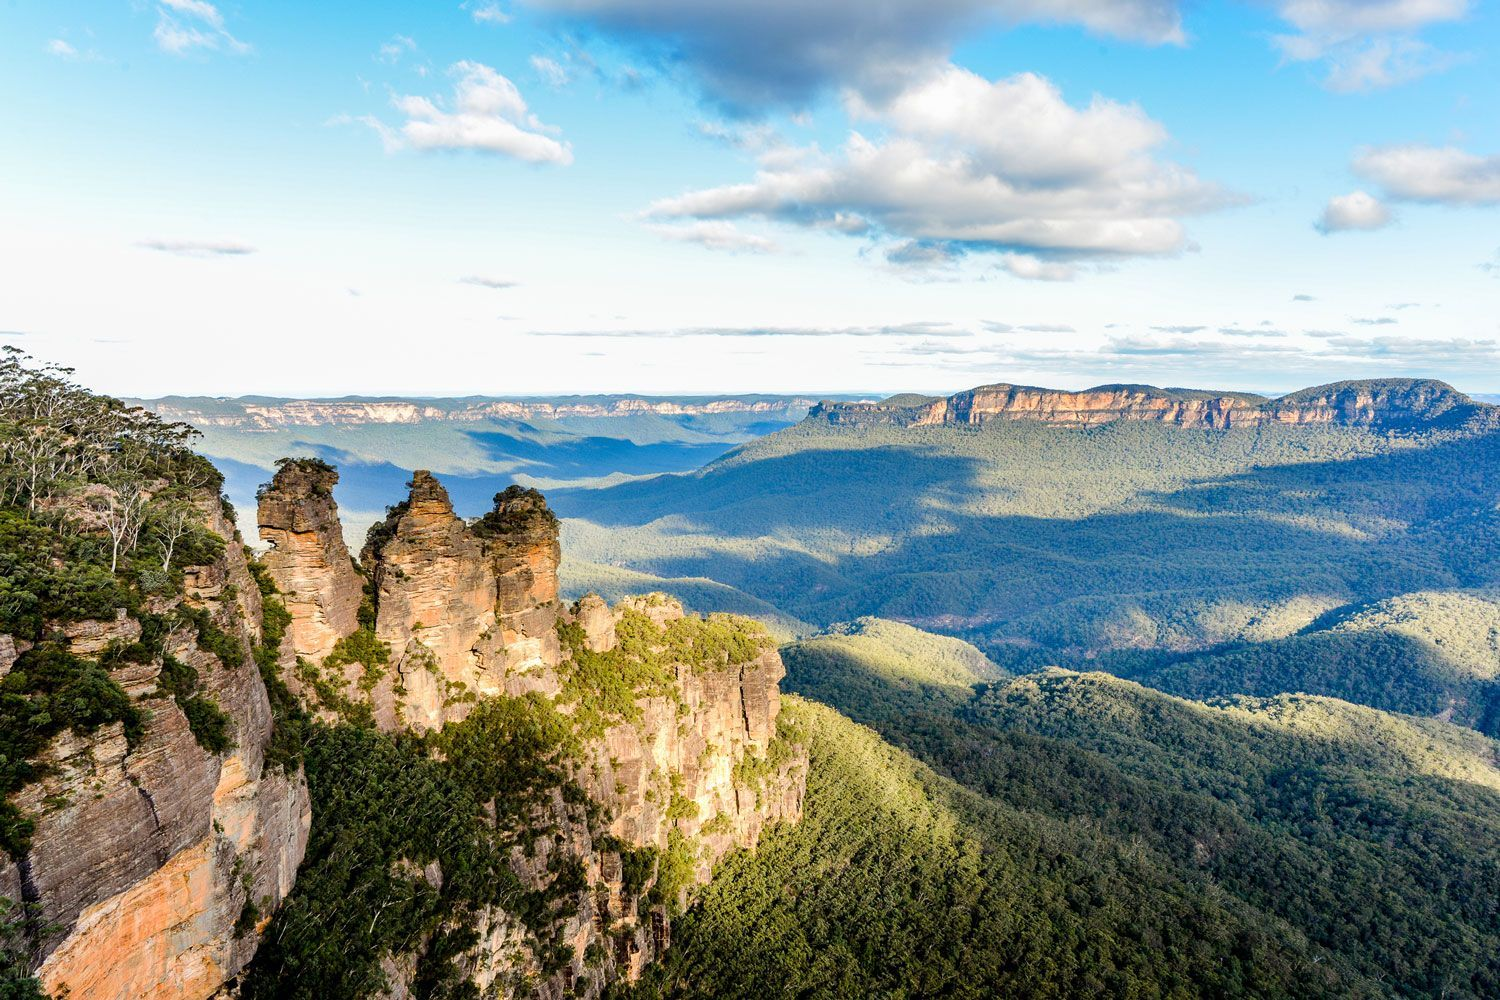 Tham gia tour Du lịch Úc mùa xuân tận hưởng thiên nhiên kỳ vĩ trong sắc màu mùa xuân - Blue Mountains | TOPTOUR